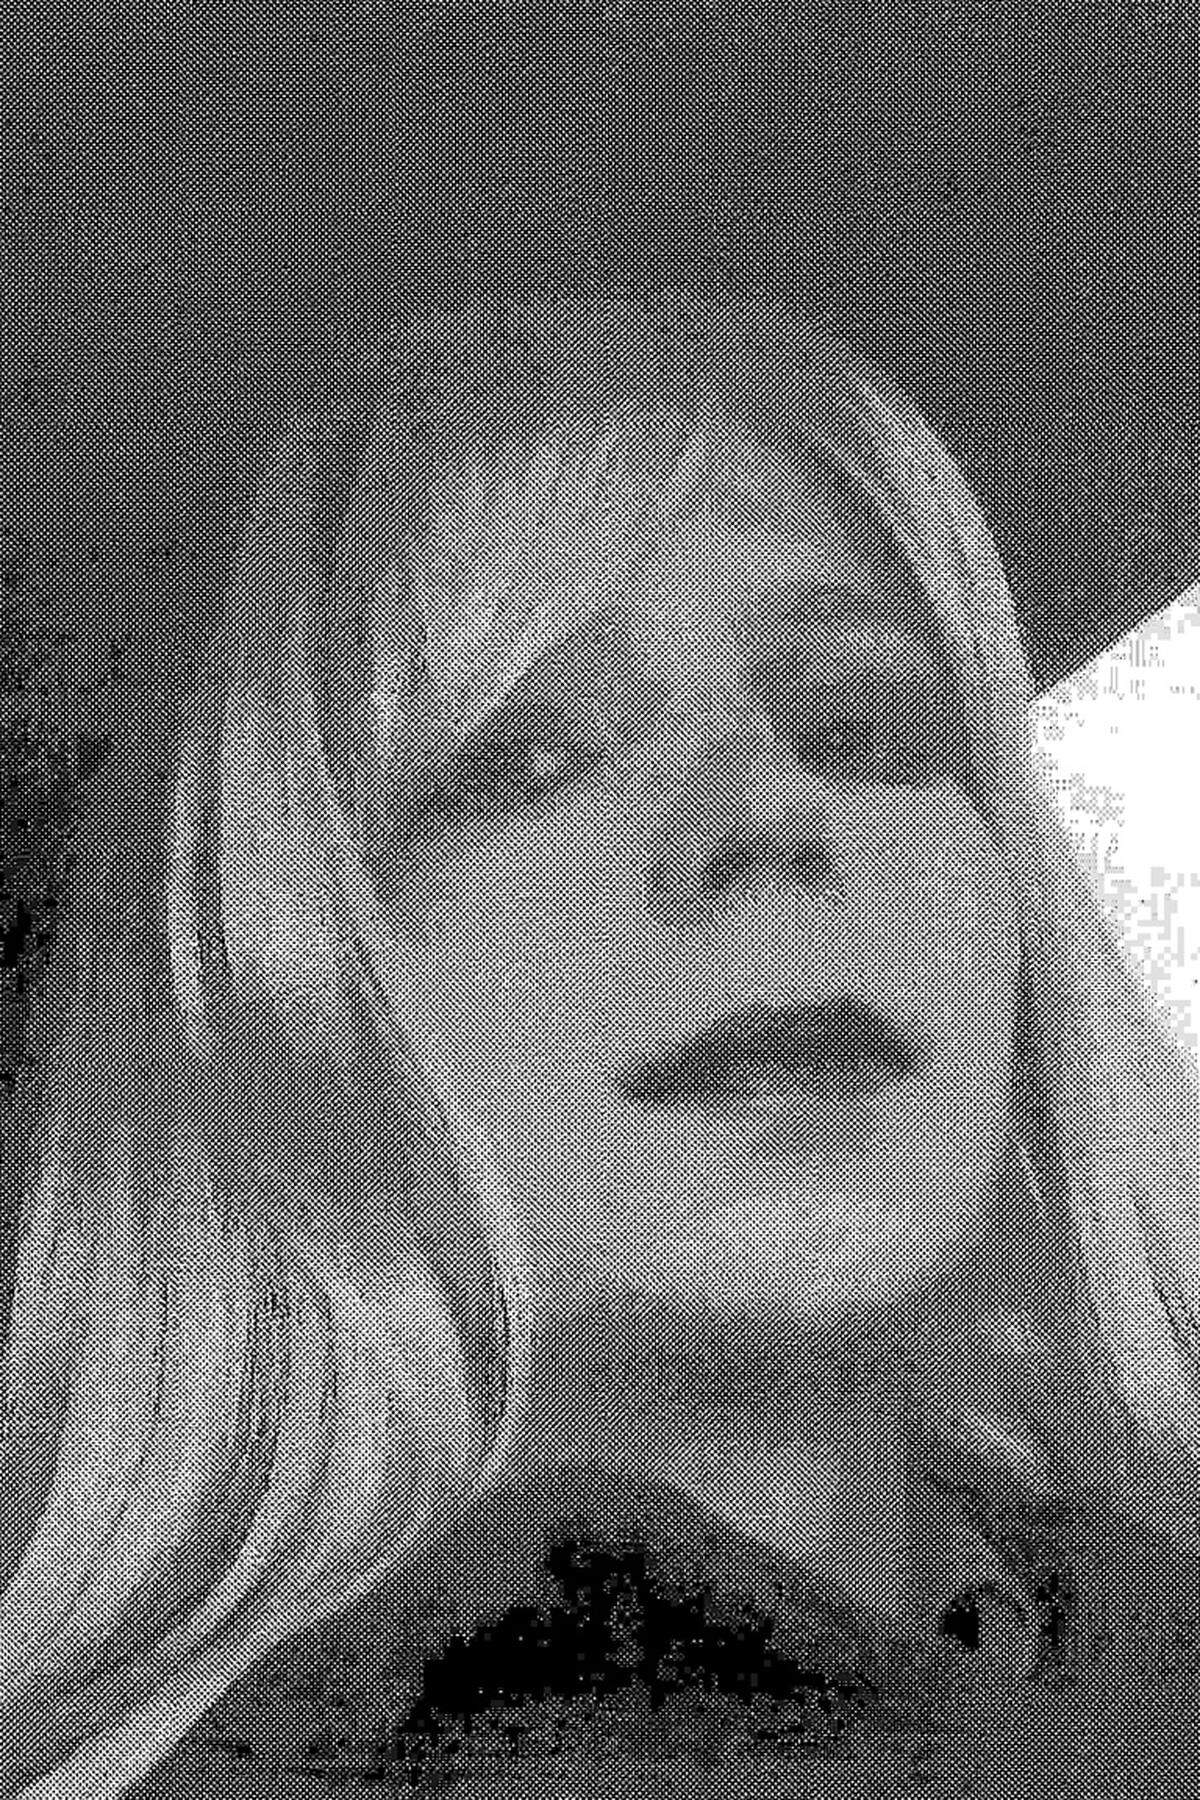 Nach Prozessende machte Manning ihre Transsexualität öffentlich. Die 25-Jährige erklärte, sie wolle künftig als Frau mit Namen Chelsea leben. Am 17. Mai 2017 kommt sie dank einer Begnadigung von US-Präsident Barack Obama frei.Ein Bild aus dem Jahr 2010 zeigt Manning geschminkt und mit blonder Perücke. Es blieb das einzige Bild bisher, das Chelsea als Frau zeigt.